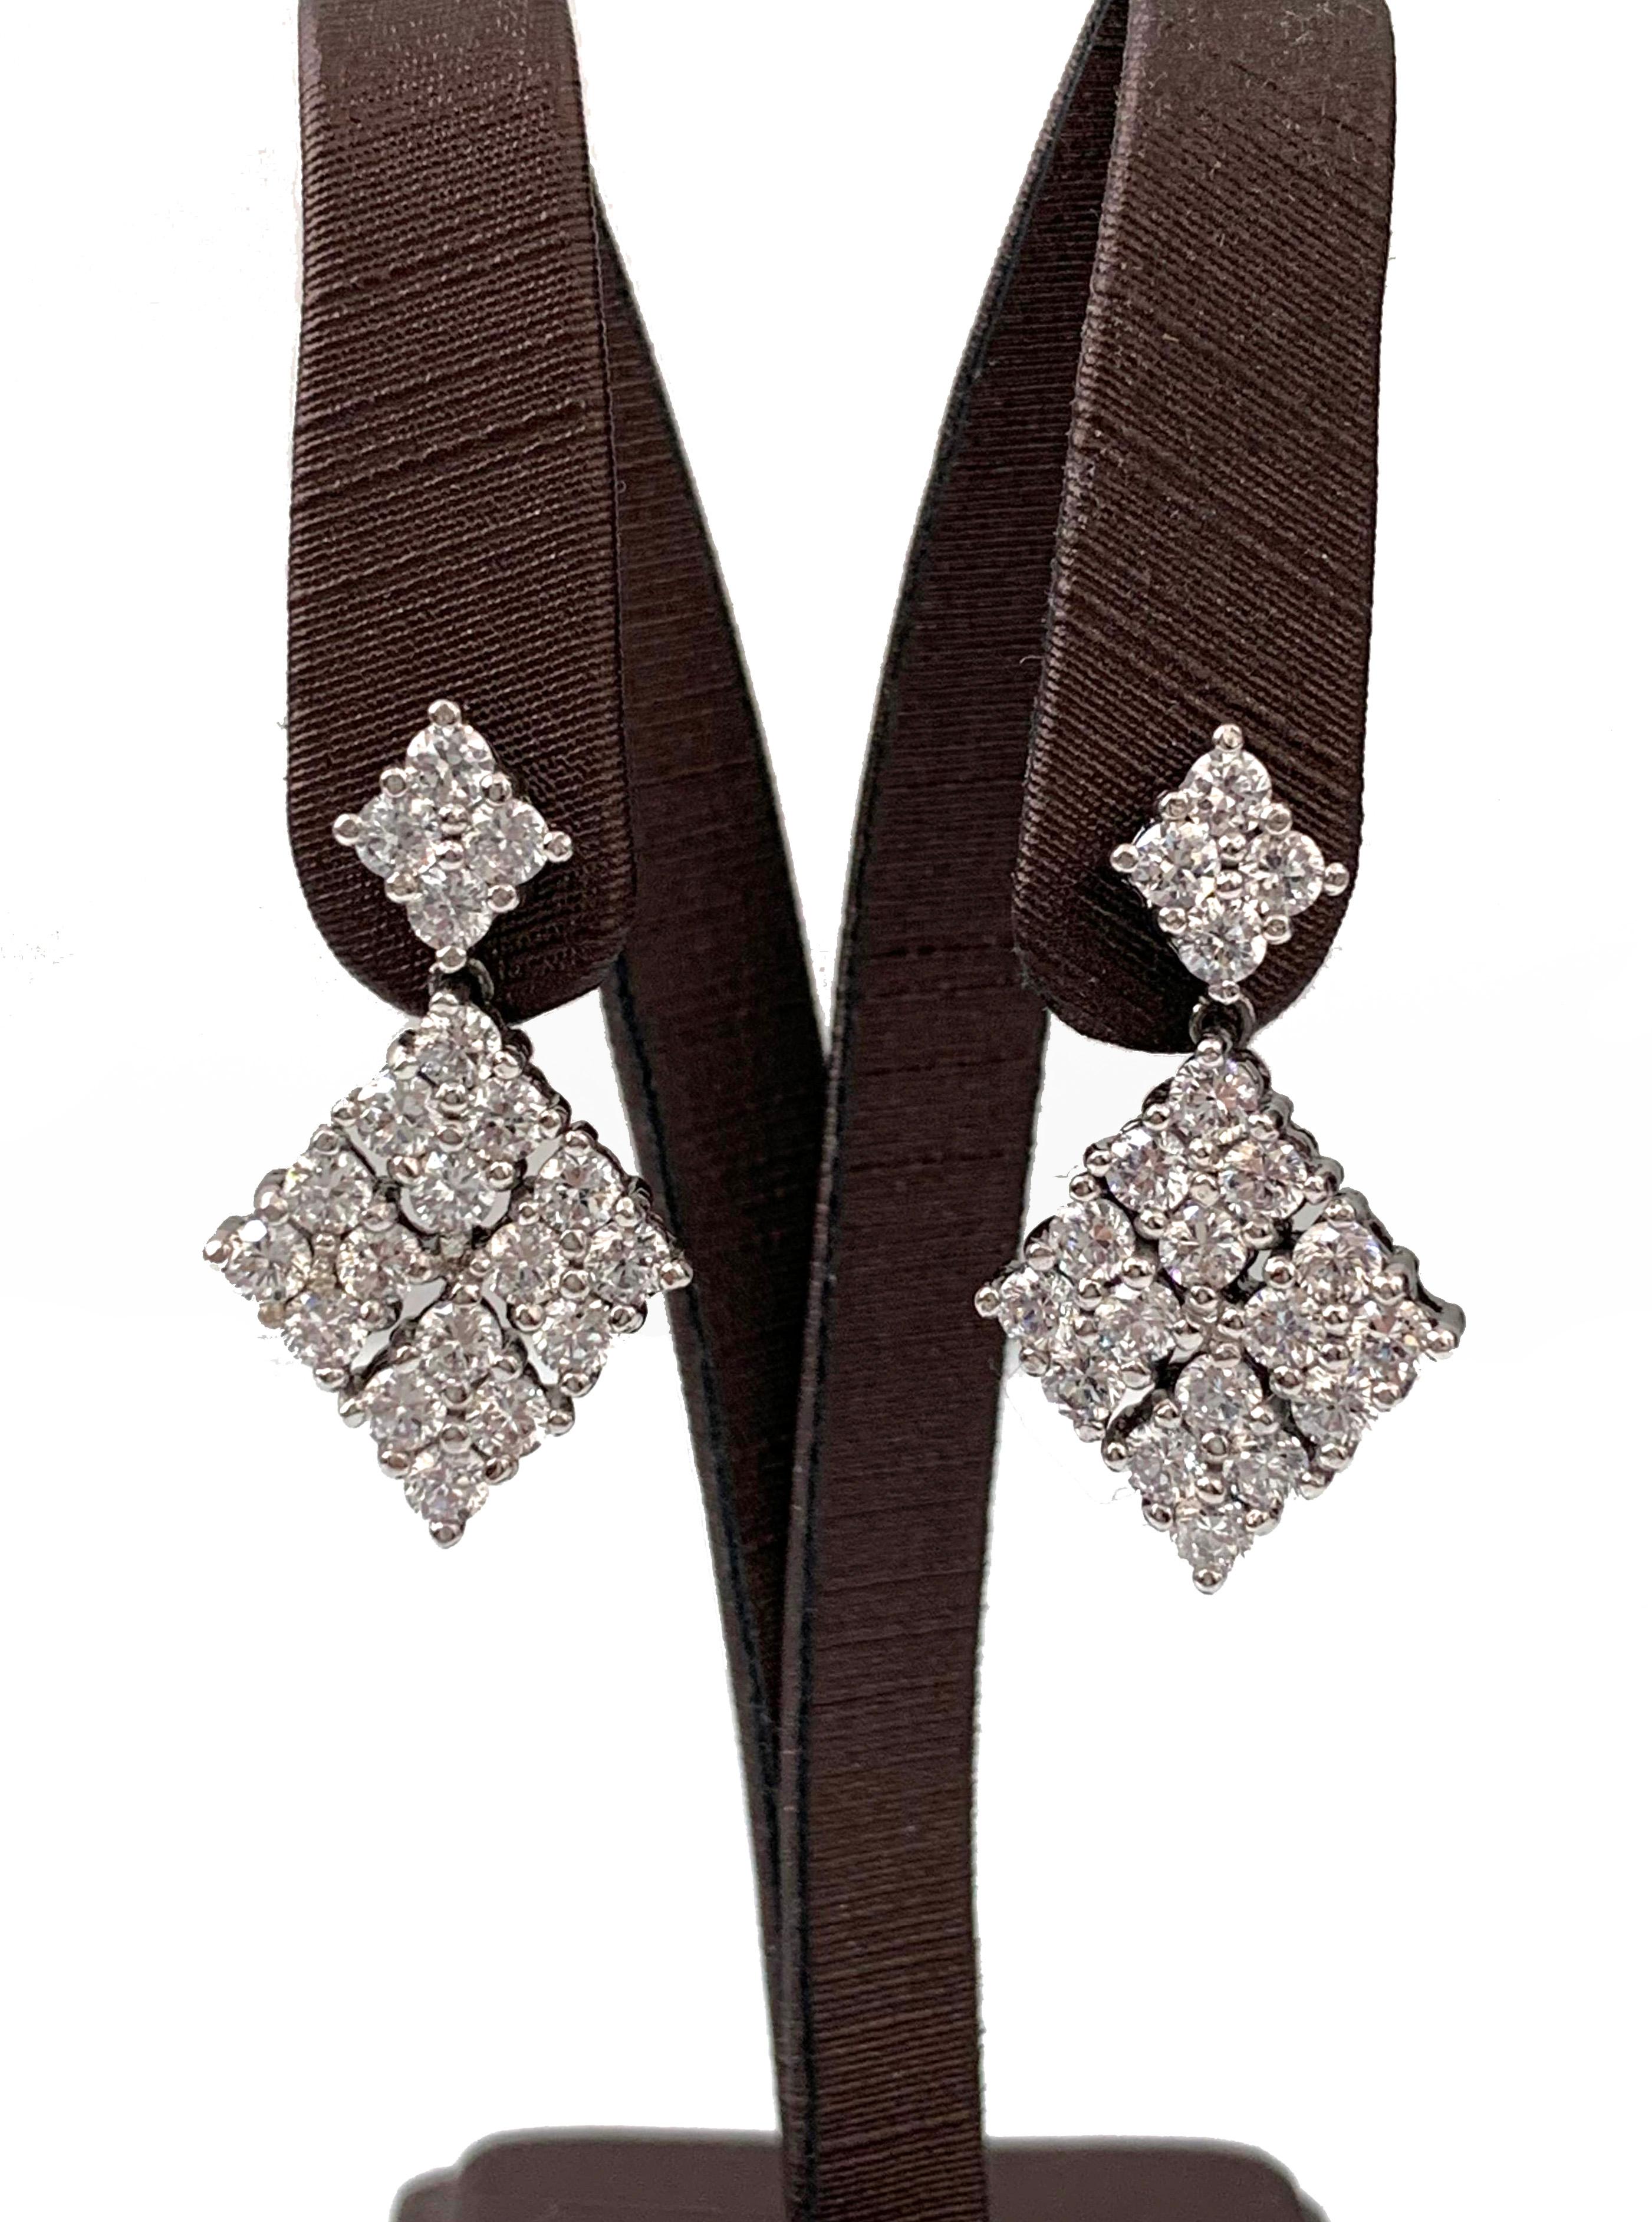 Small diamond shape cubic zirconia dangle earrings.  Top part is 0.25